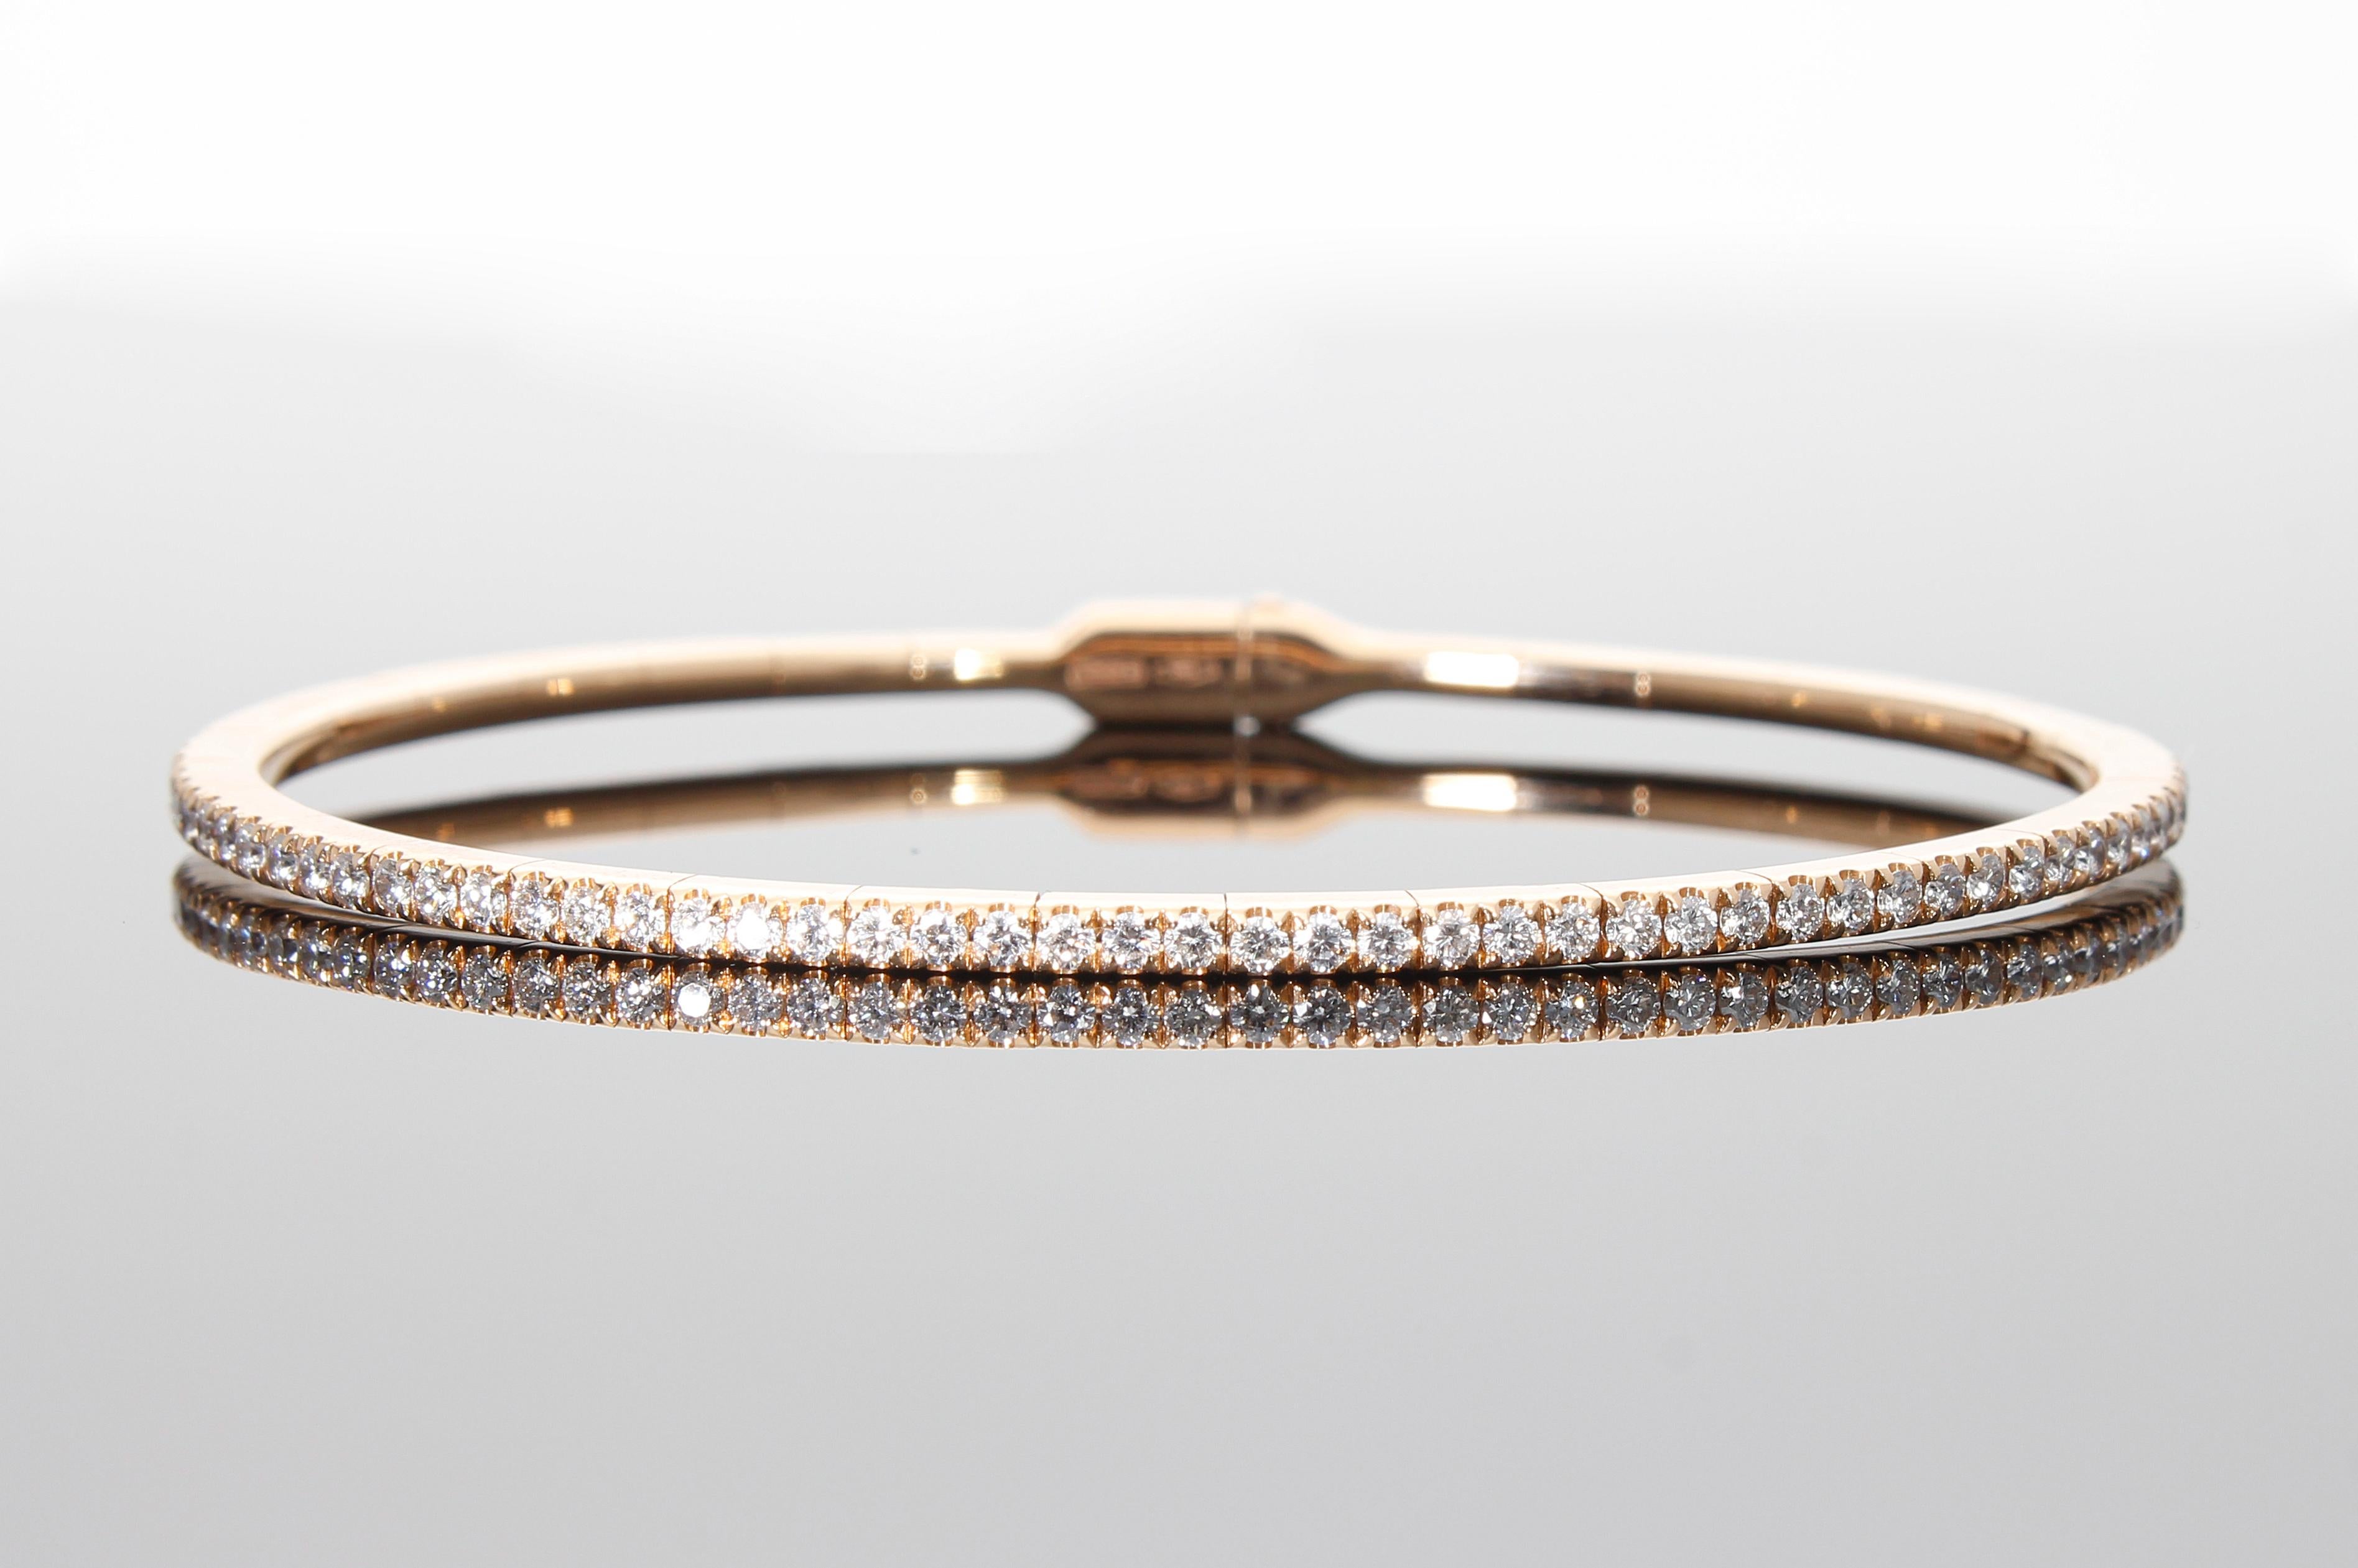 Das halbstarre Armband besteht aus einer Reihe von einundfünfzig Diamanten im Brillantschliff mit einem Gesamtkaratgewicht von 0,75 Karat. I
ts Rahmen besteht aus verschiedenen Segmenten, die ihn elastisch und angenehm zu tragen machen. 
Es hat